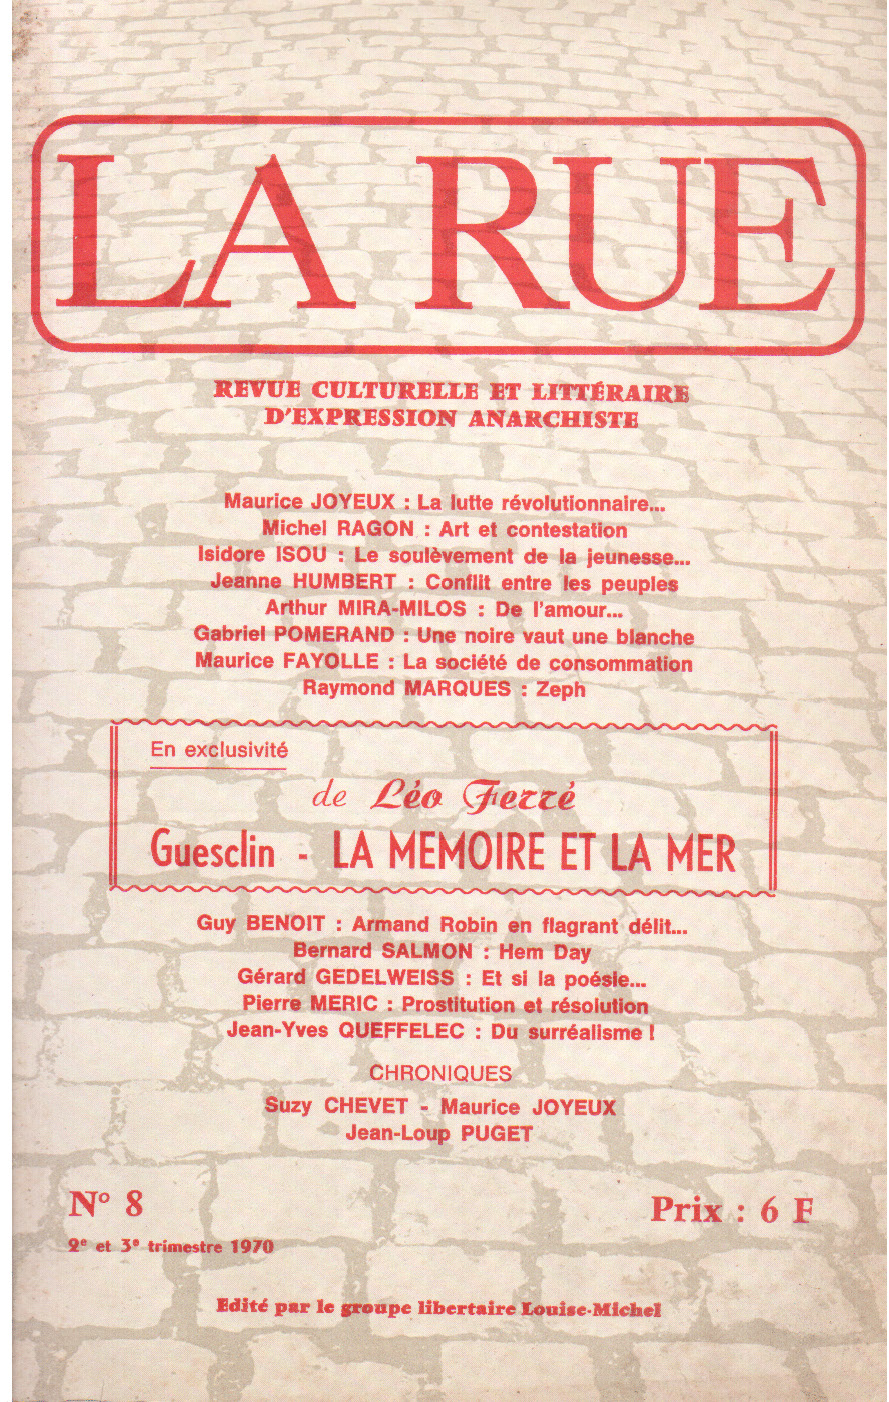 Léo Ferré - La rue n°8, 2 et 3eme trimestre